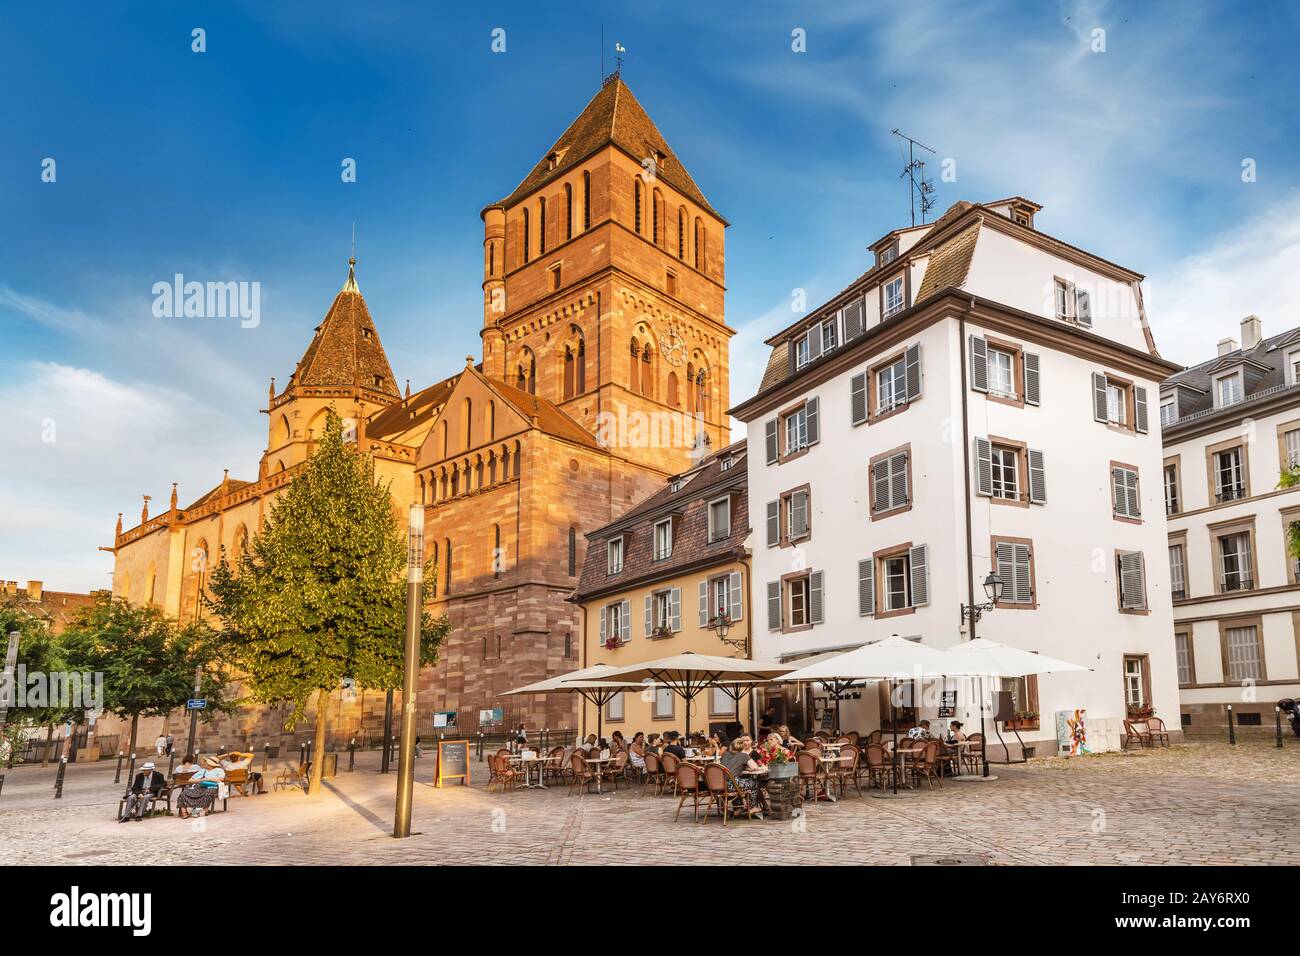 21 juillet 2019, Strasbourg, France : église Saint Thomas de Strasbourg et repos des personnes à la chaude journée estivale Banque D'Images